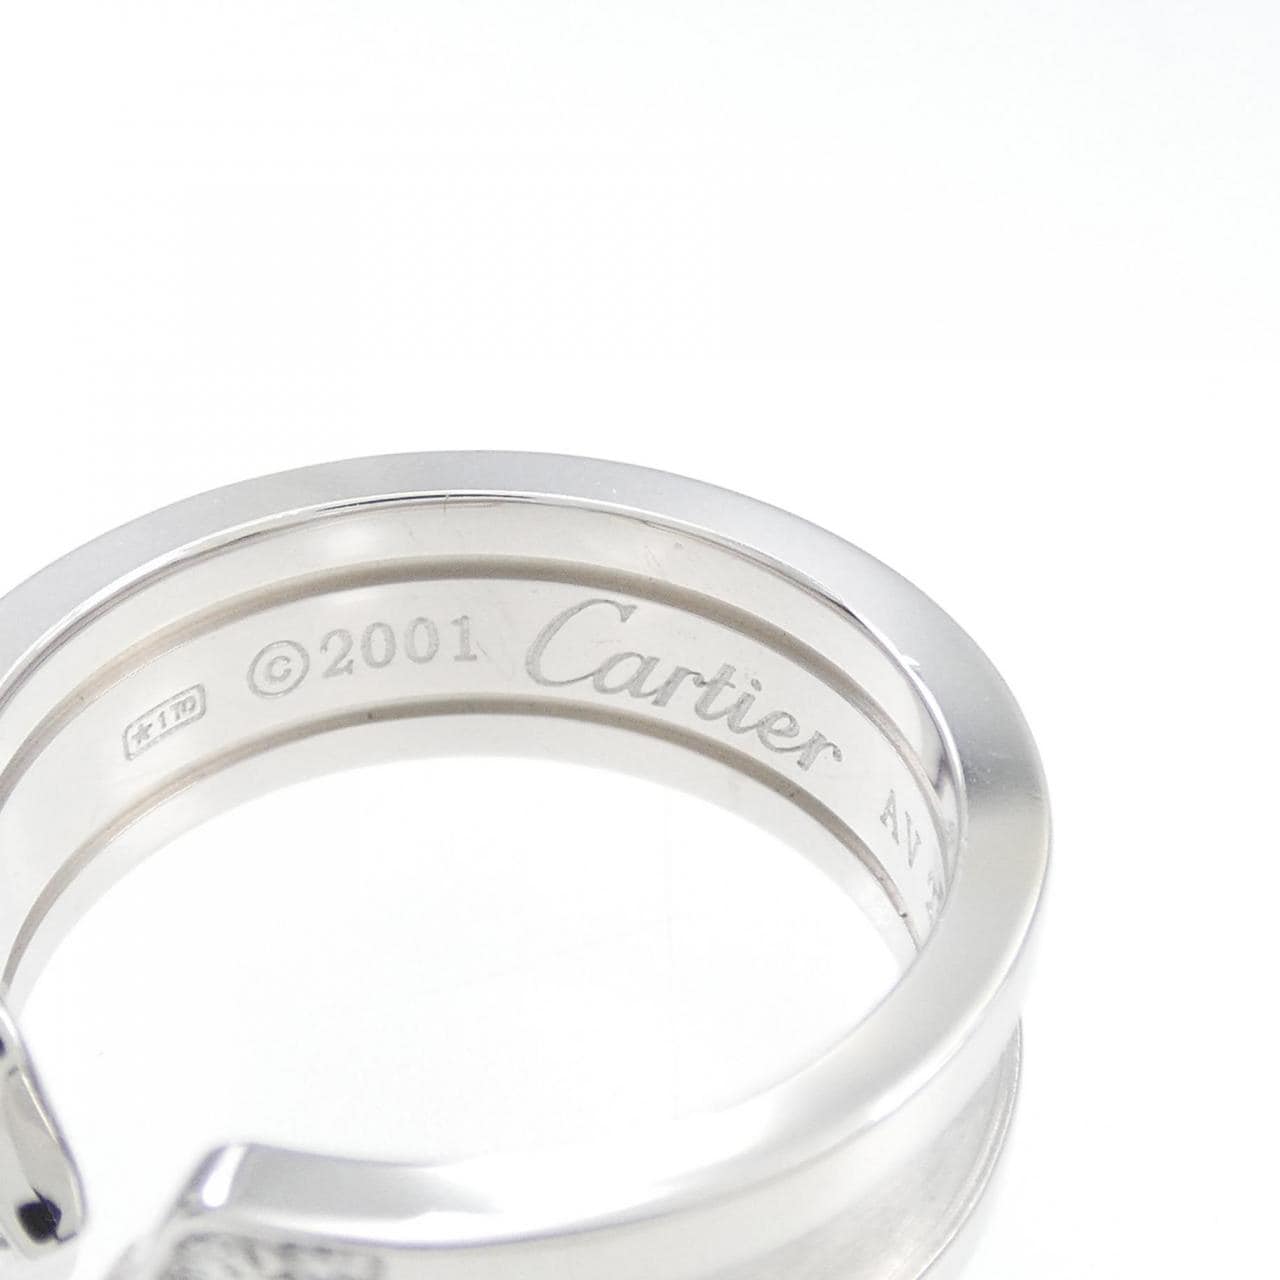 Cartier C2小號戒指